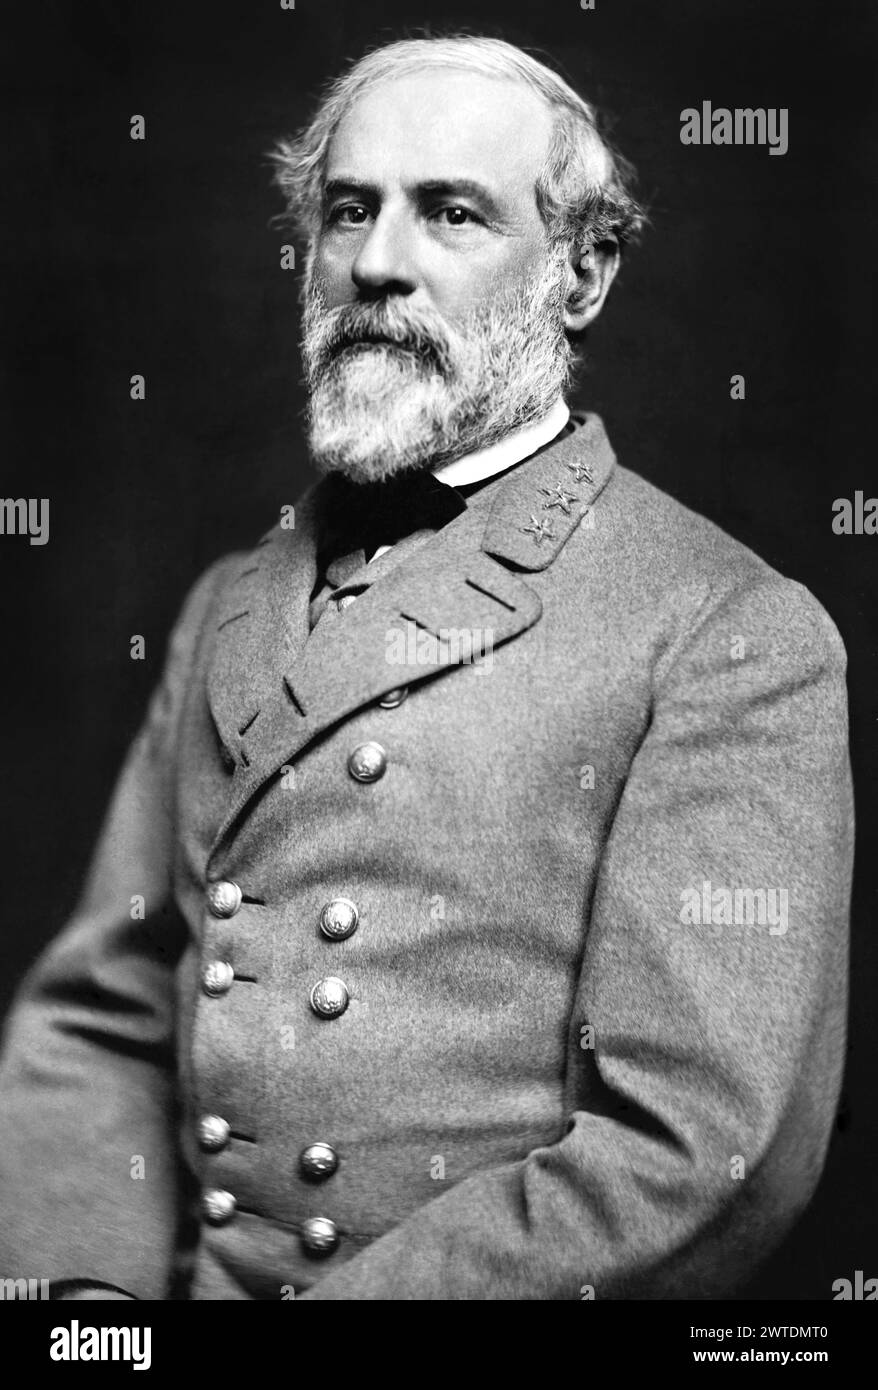 Robert Edward Lee (19 gennaio 1807 – 12 ottobre 1870) è stato un generale confederato durante la guerra di secessione americana, verso la fine della quale è stato nominato comandante generale dell'esercito degli Stati Confederati d'America. Foto Stock